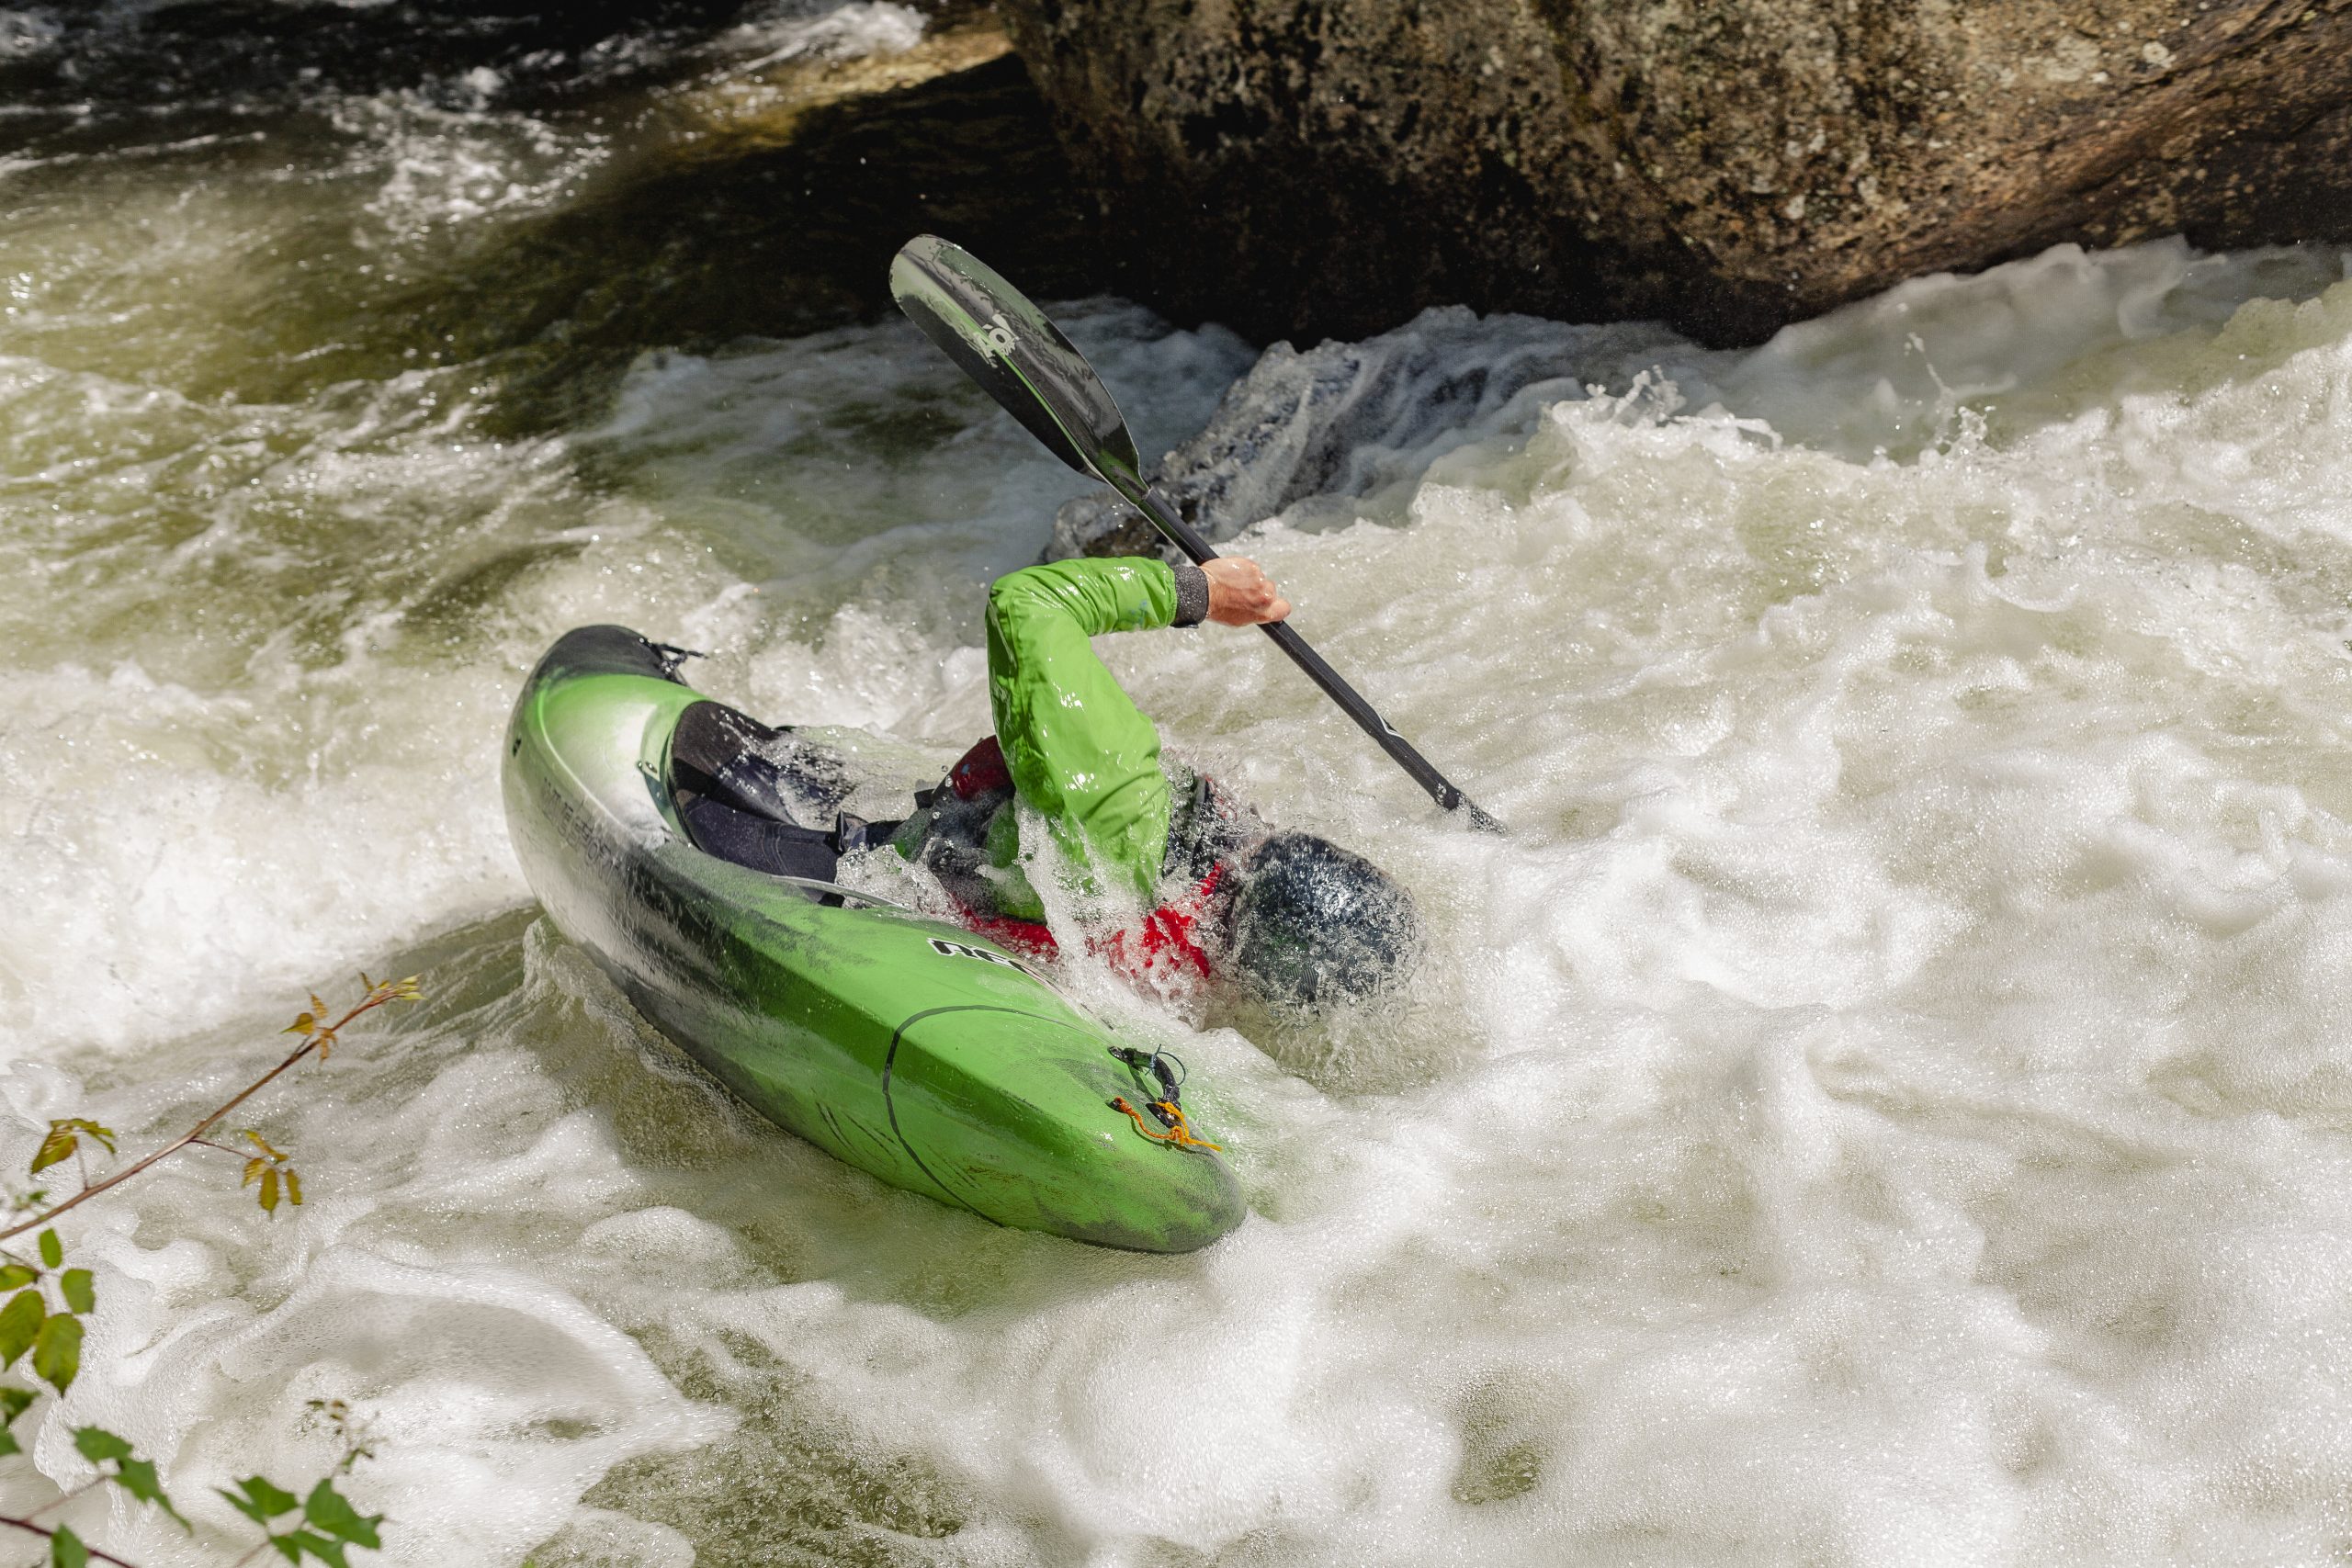 Esquimotaje en La Rampa. Río Piqueras. Descenso en piragua. XX competición de Kayak extremo. 24 de julio de 2022.
© Juan San Sebastián. Todos los derechos reservados.